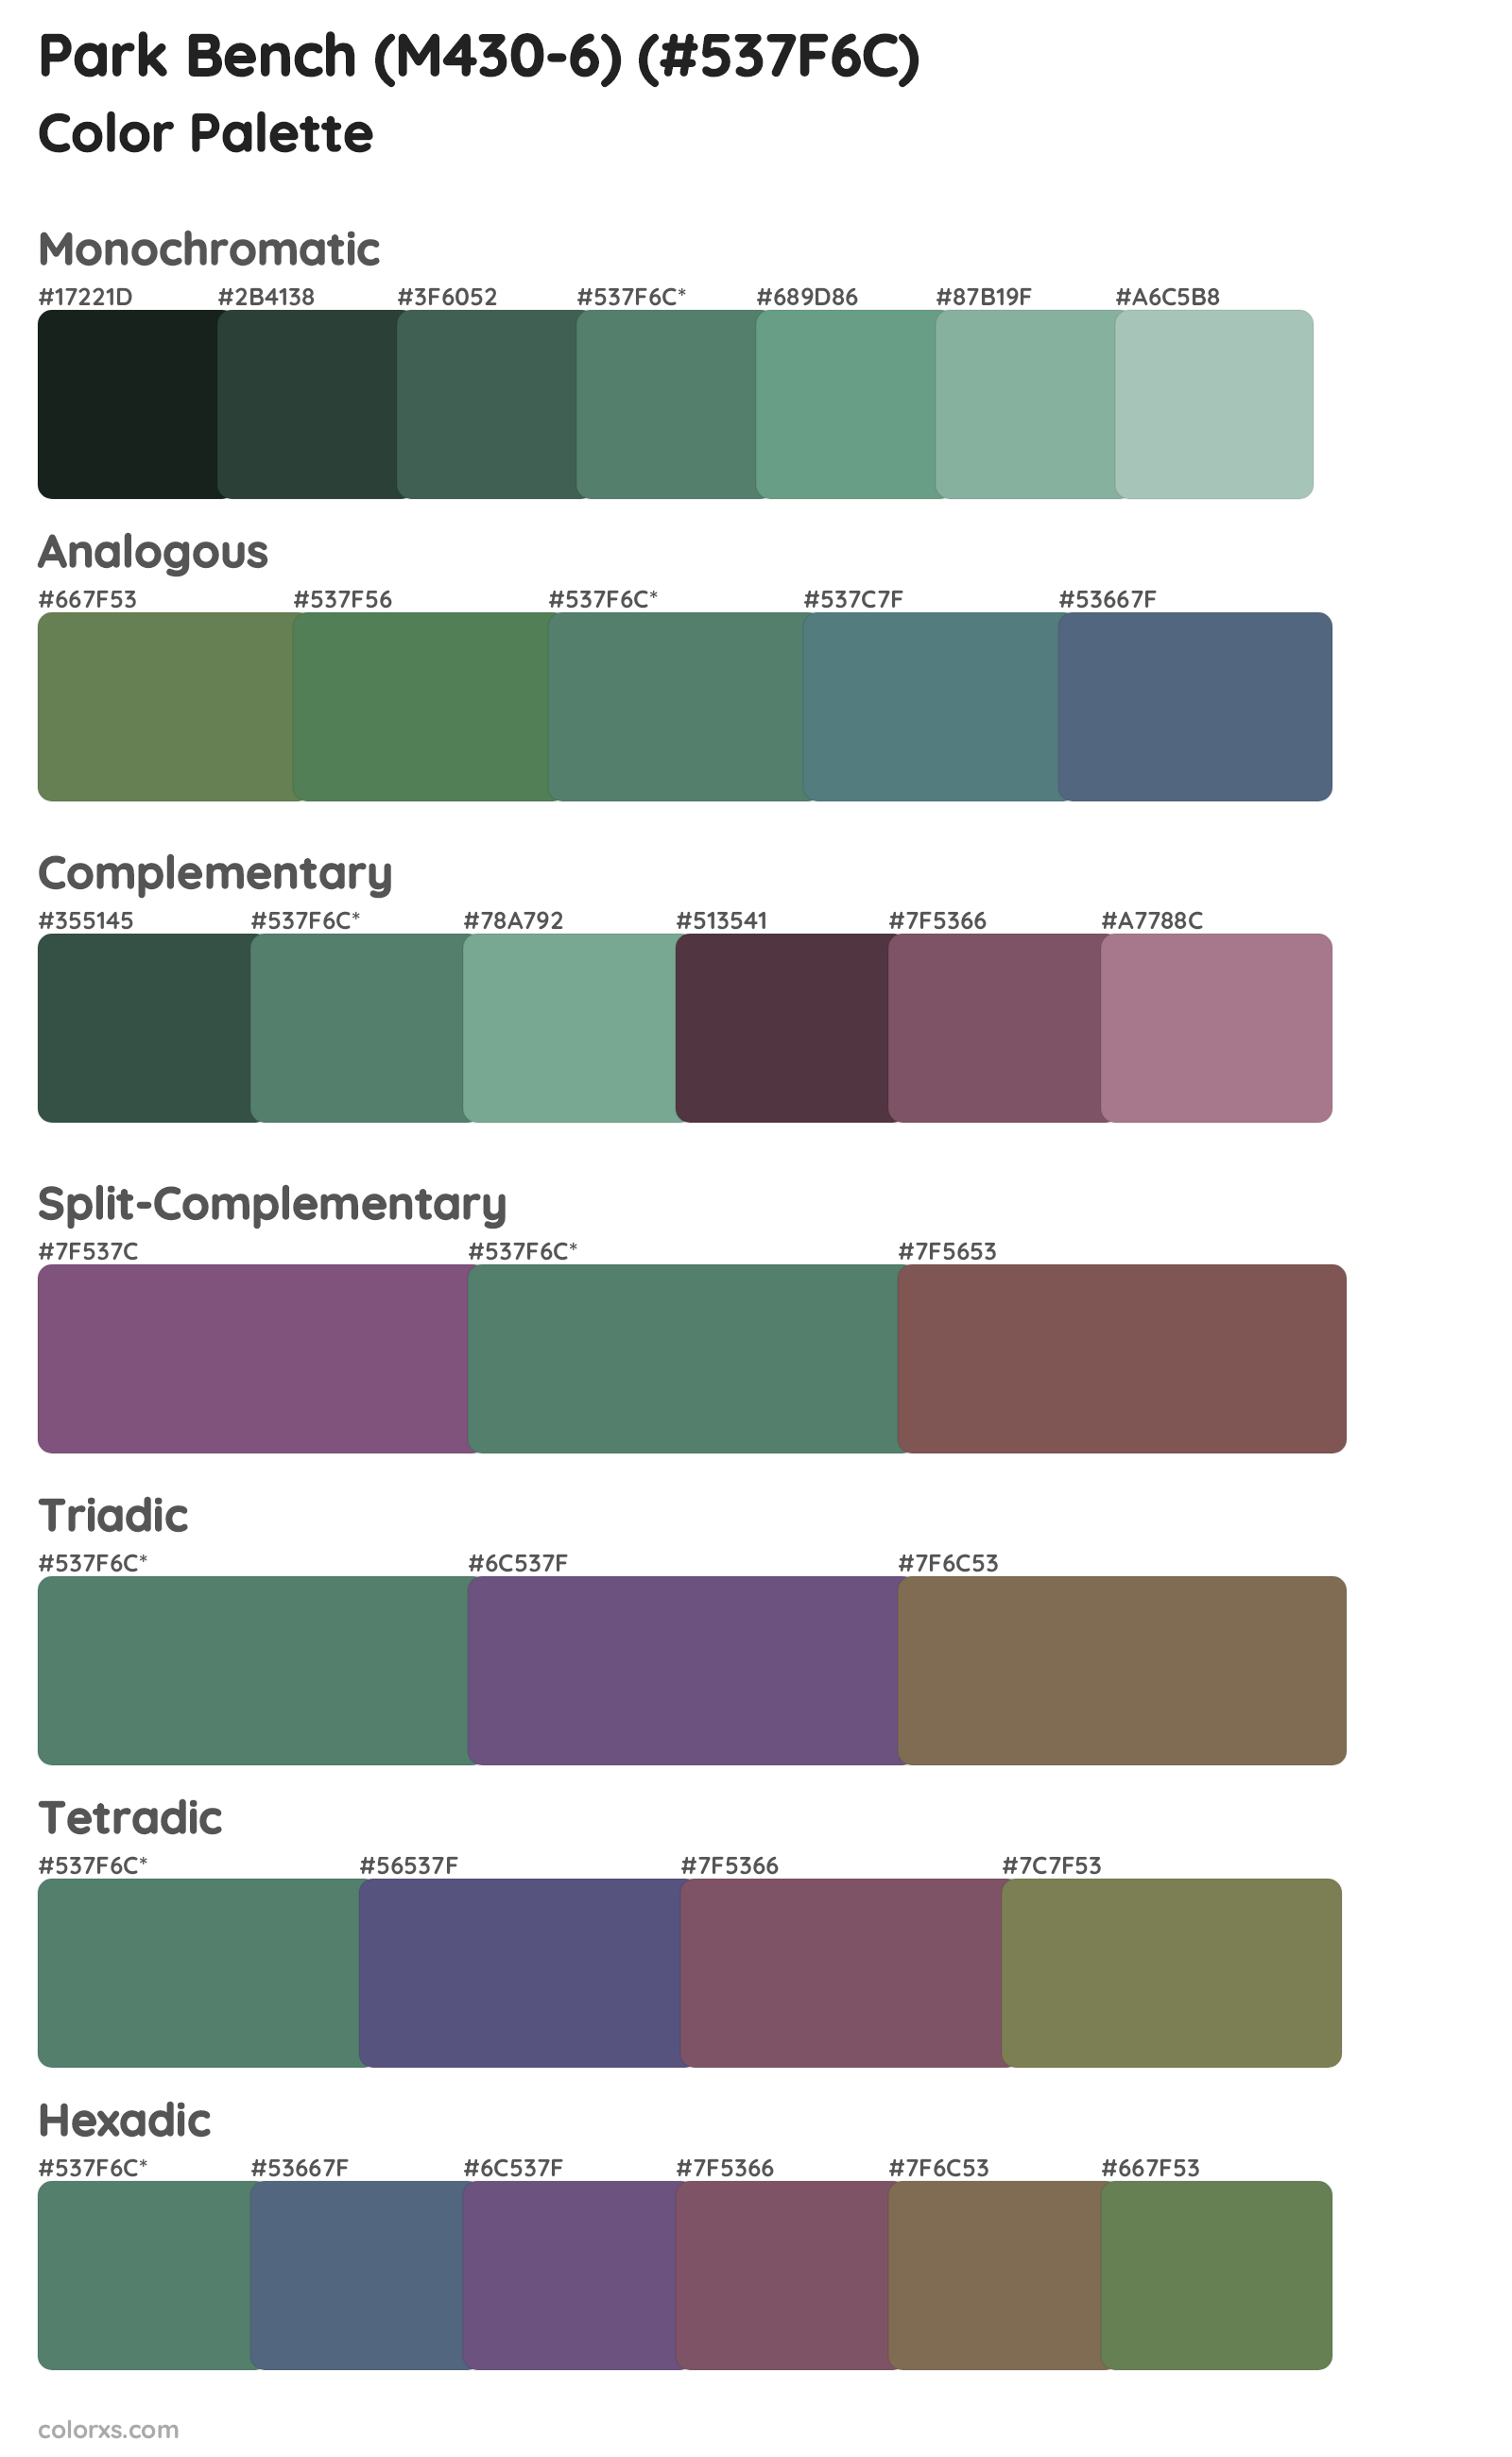 Park Bench (M430-6) Color Scheme Palettes